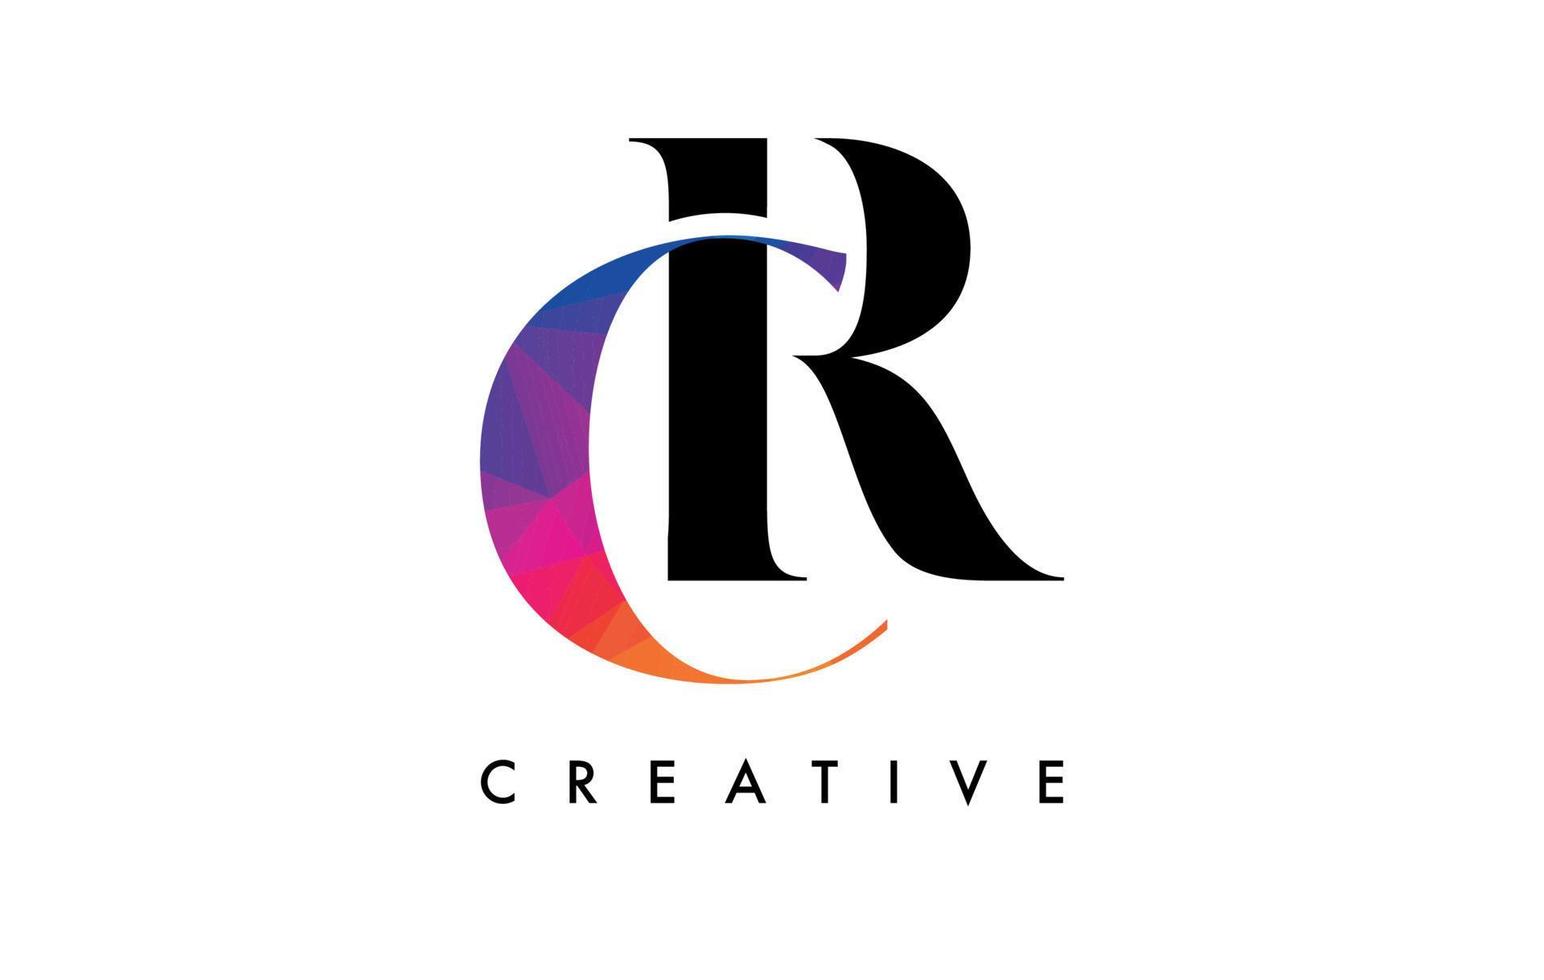 conception de lettre cr avec coupe créative et texture arc-en-ciel colorée vecteur